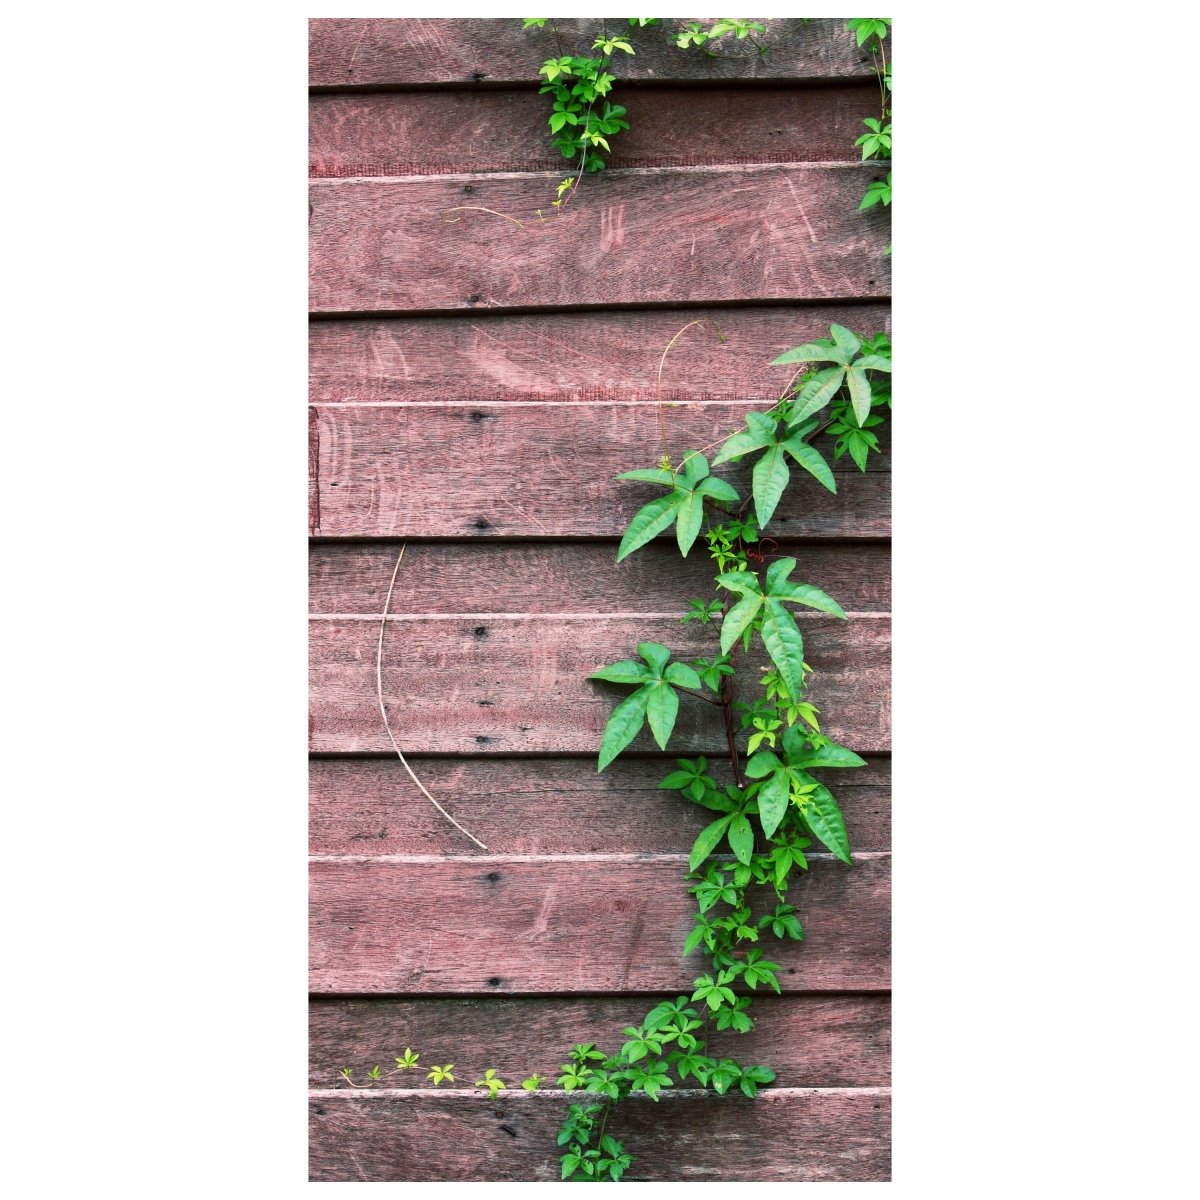 Türtapete Wand mit Kletterpflanze M1004 - Bild 2